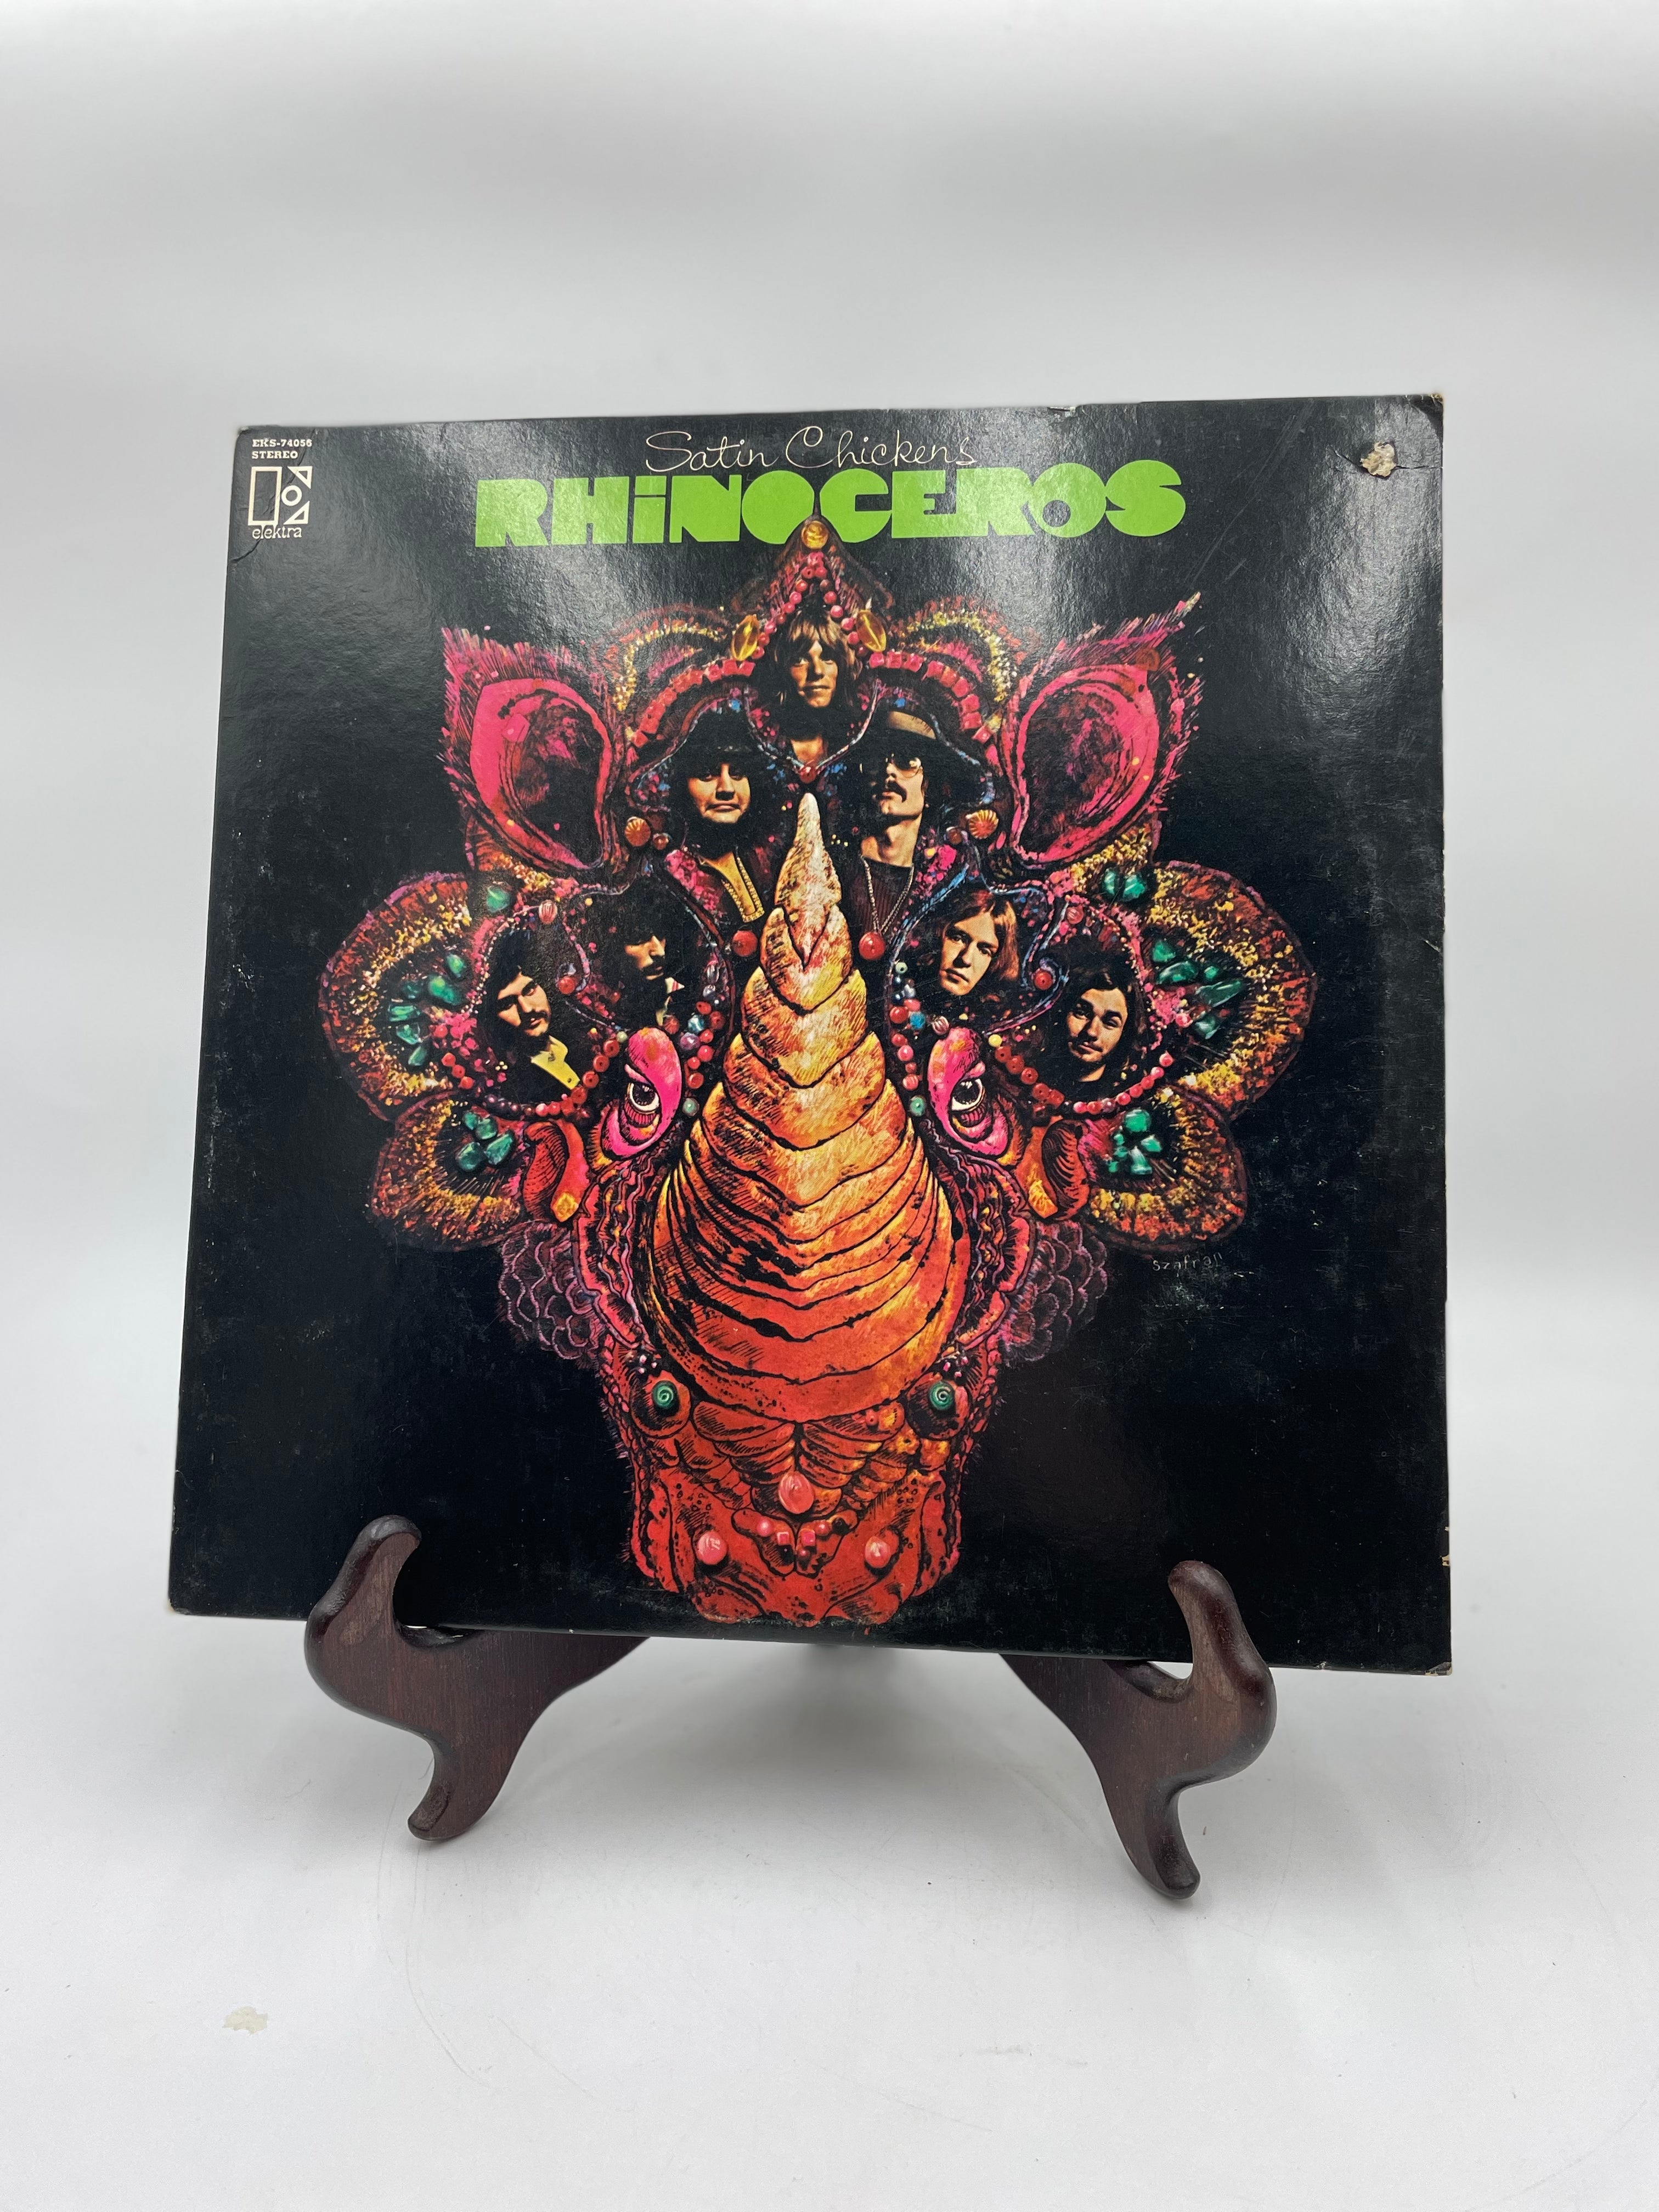 Rhinoceros - Satin Chickens - Vinyl